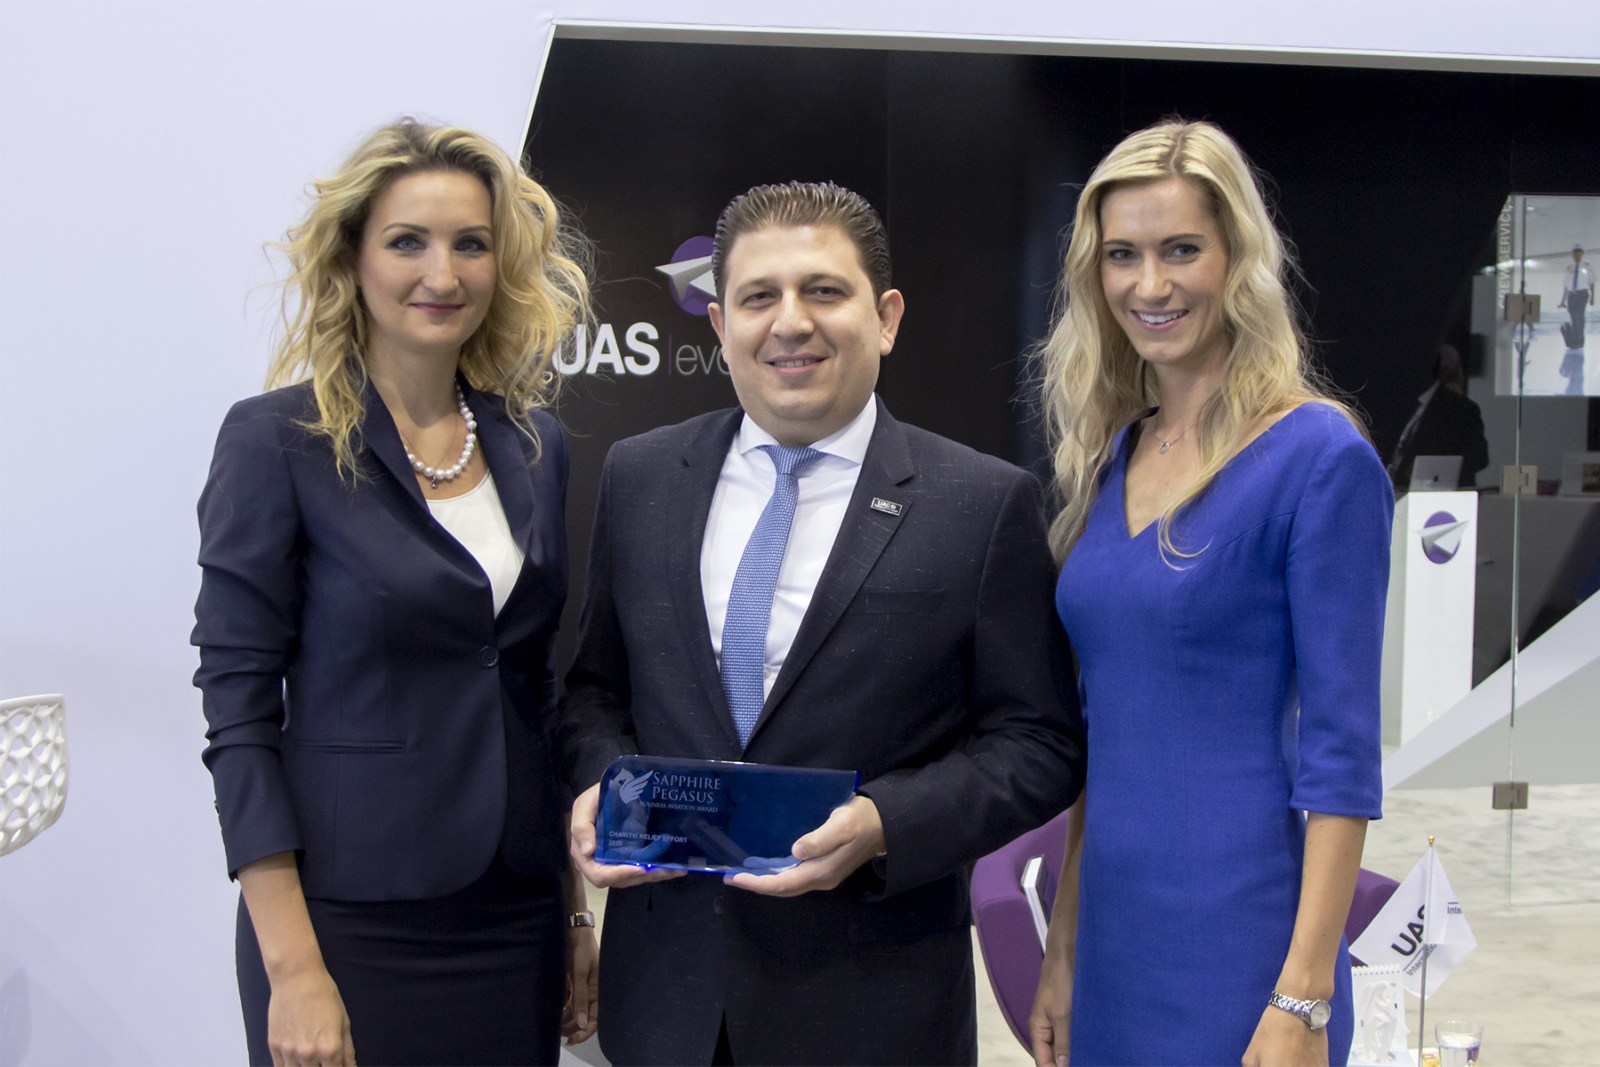 UAS Co-founder and Executive President, Mohammed Husary with Antonia Lukacinova and Zuzana Vaclavova of MEDIA Tribune at EBACE 2016